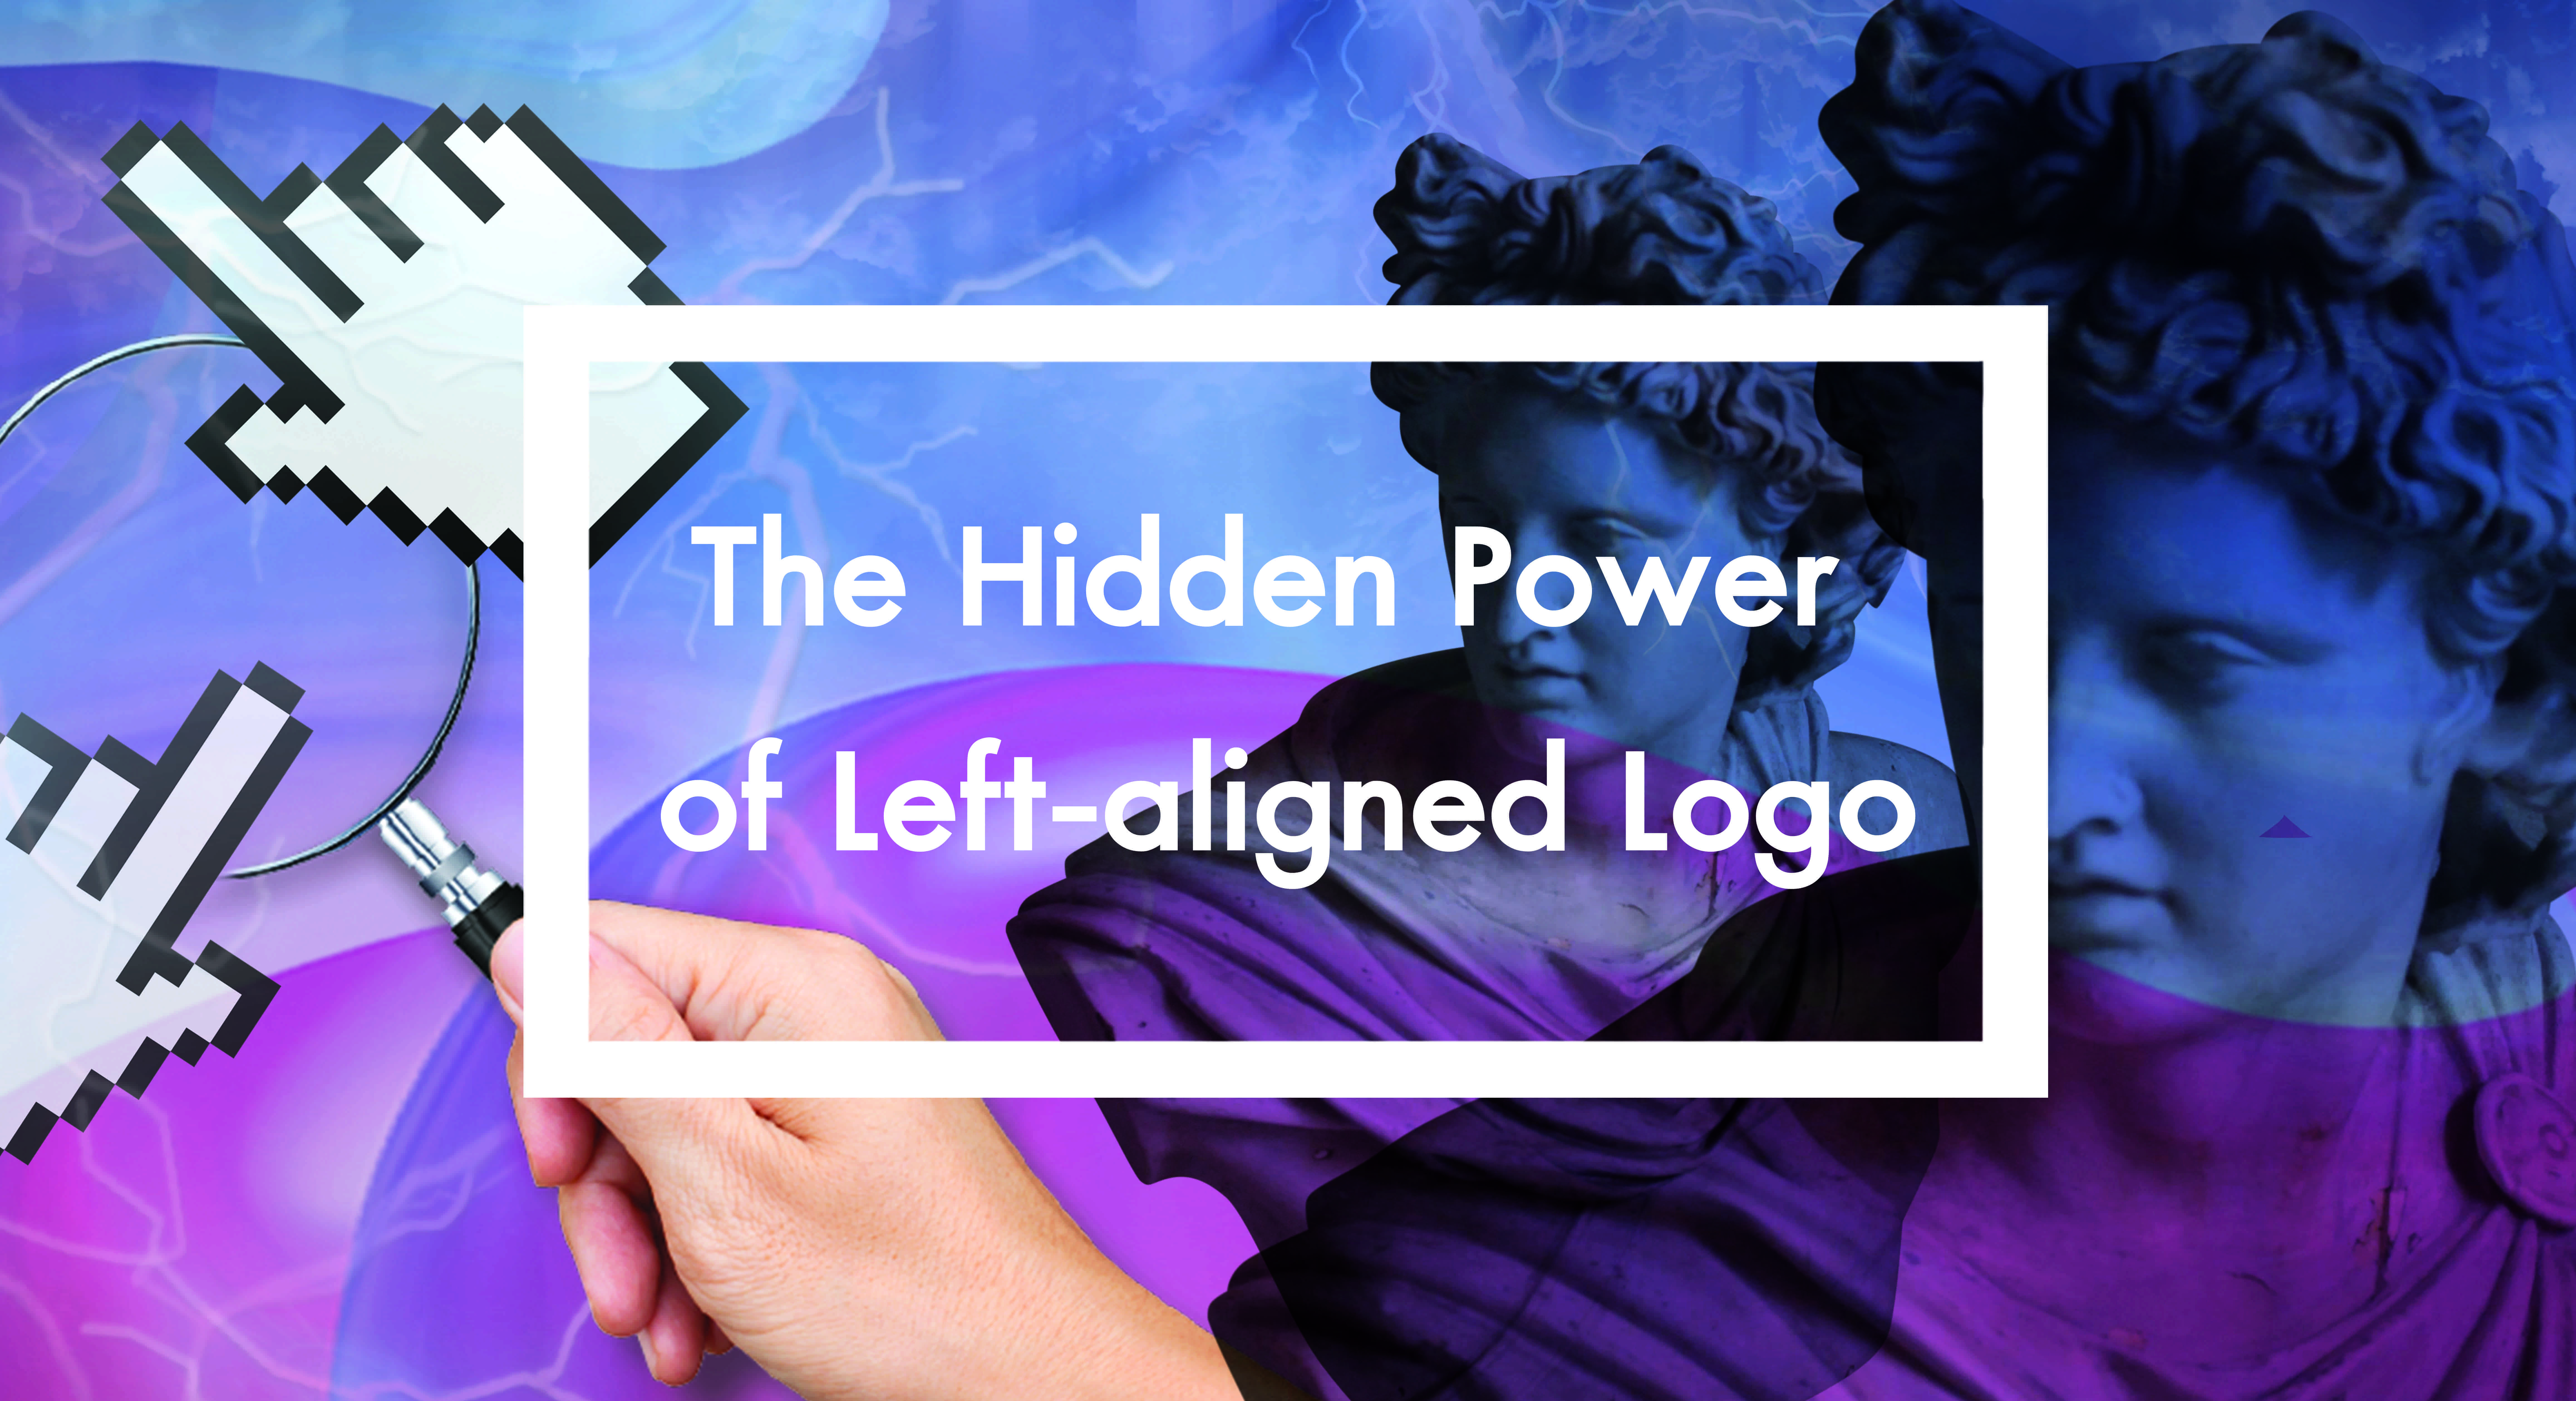 The Hidden Power of Left-aligned Logo